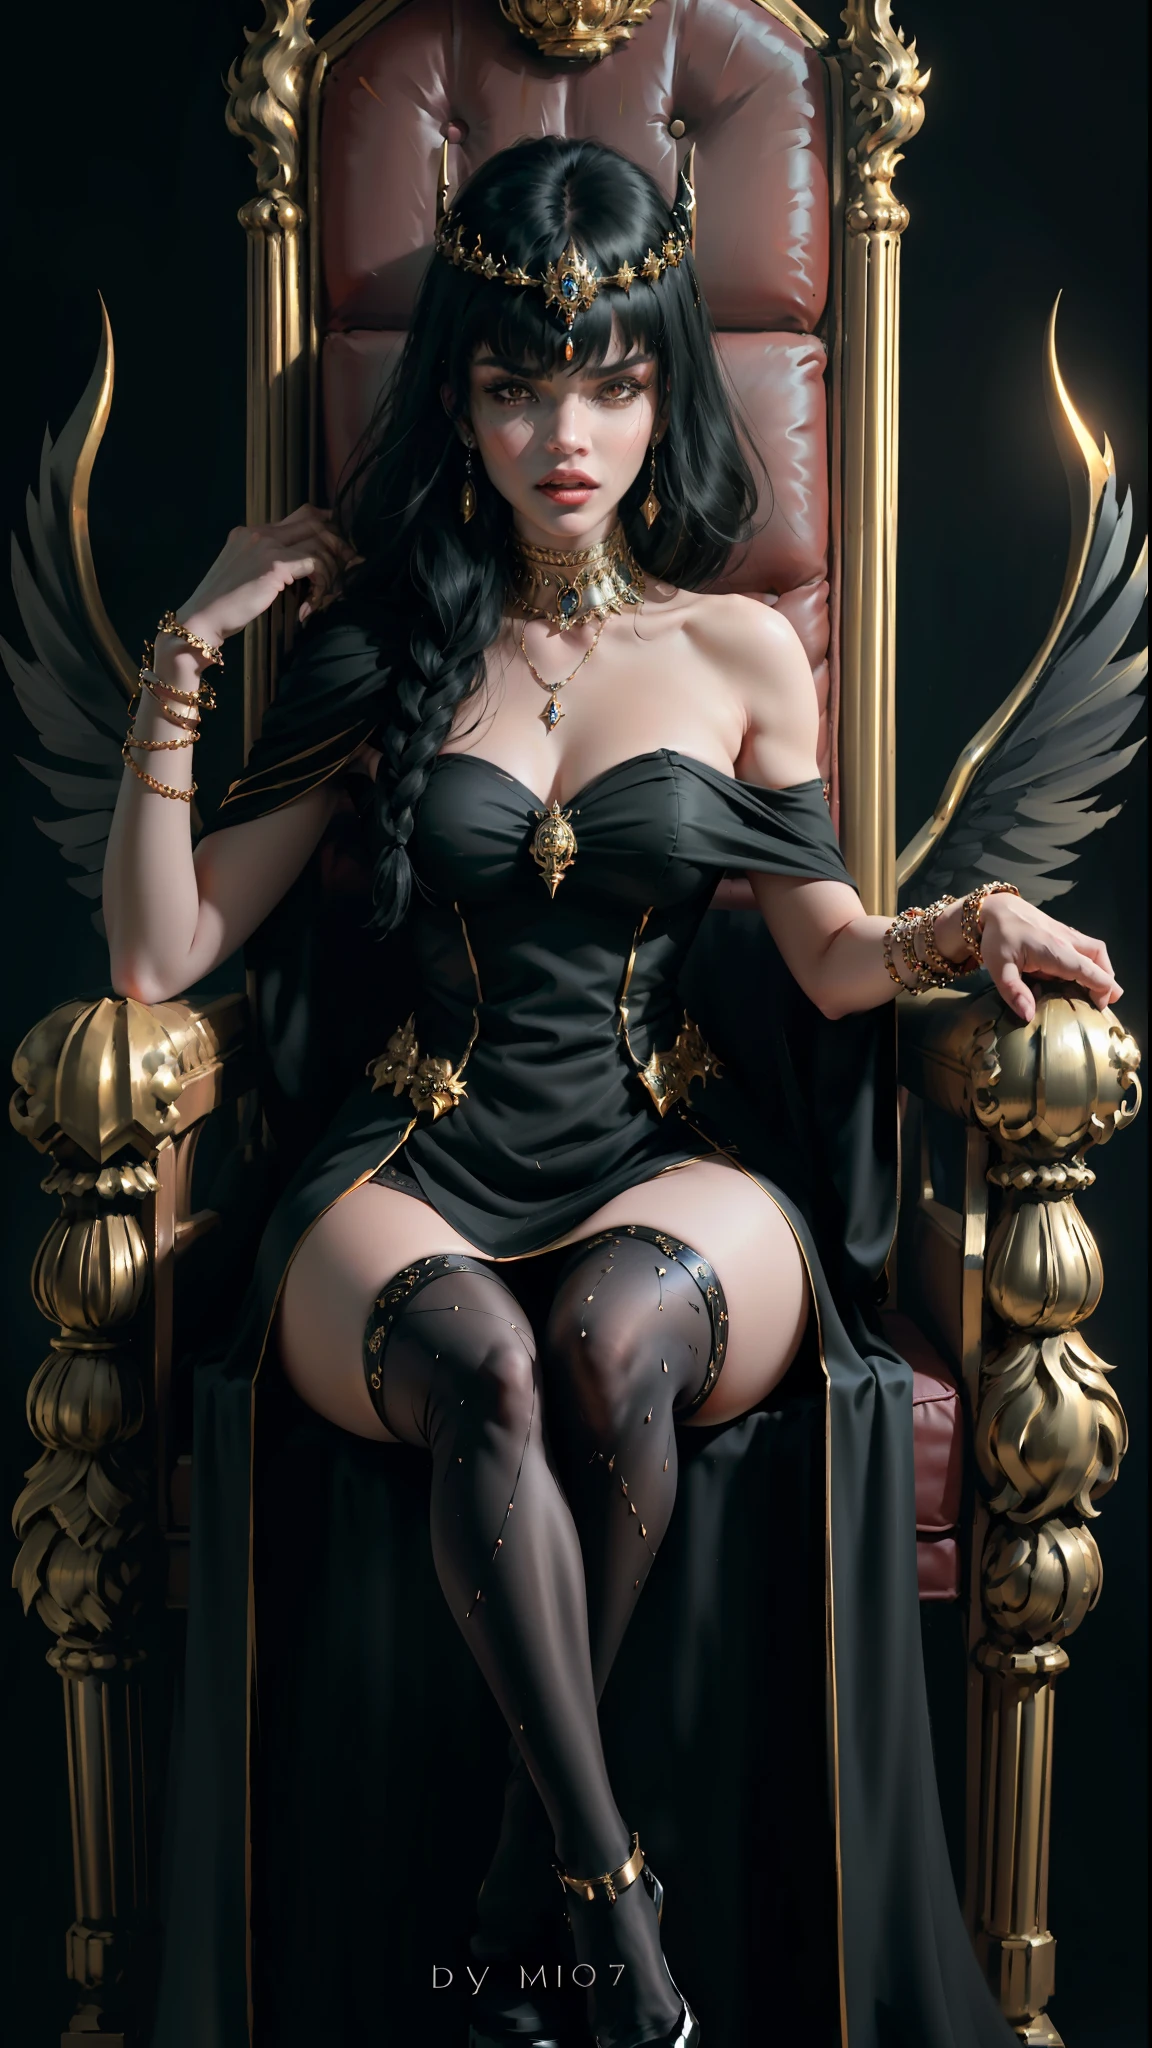 ((أفضل جودة)), ((تحفة)), (مفصلة للغاية:1.3),امرأة غرة شعر سوداء تغطي عينيها, تخويف الملكة شيطان غاضبة جدا, يجلس على العرش يرتدي كل جوارب سوداء تضحك الأساور